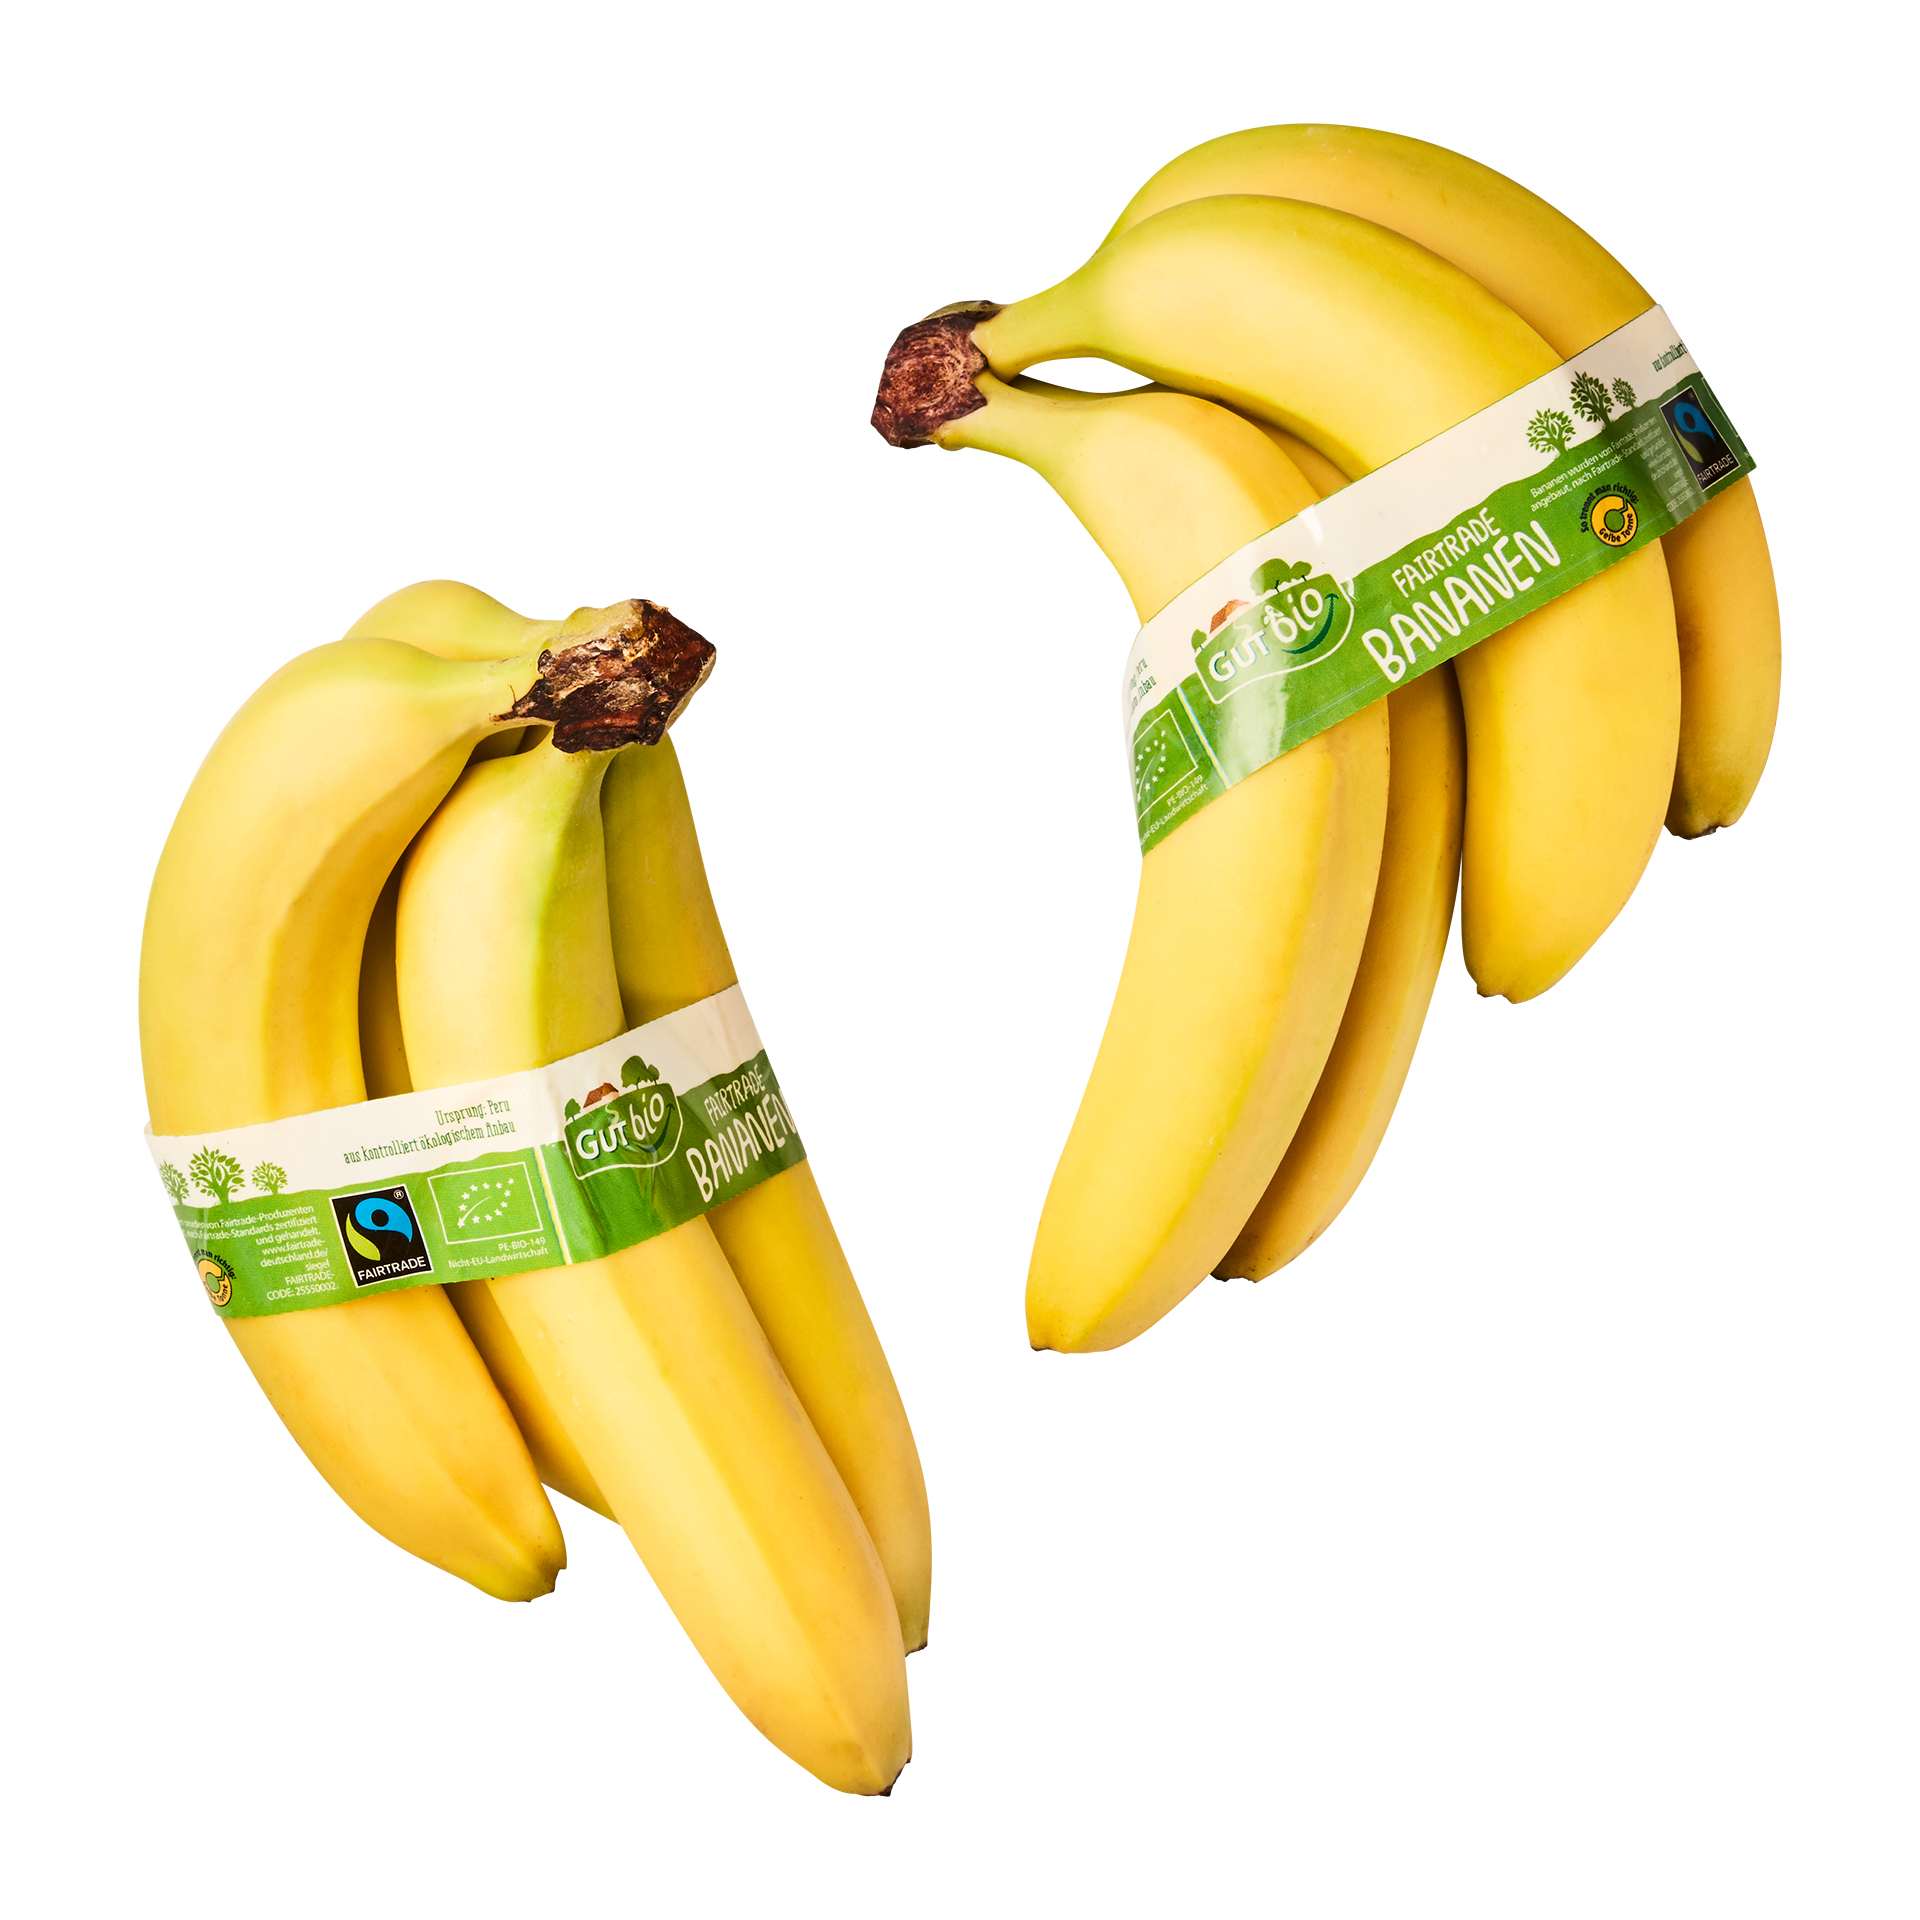 GUT BIO Fairtrade günstig ALDI bei Bio-Bananen, Nord